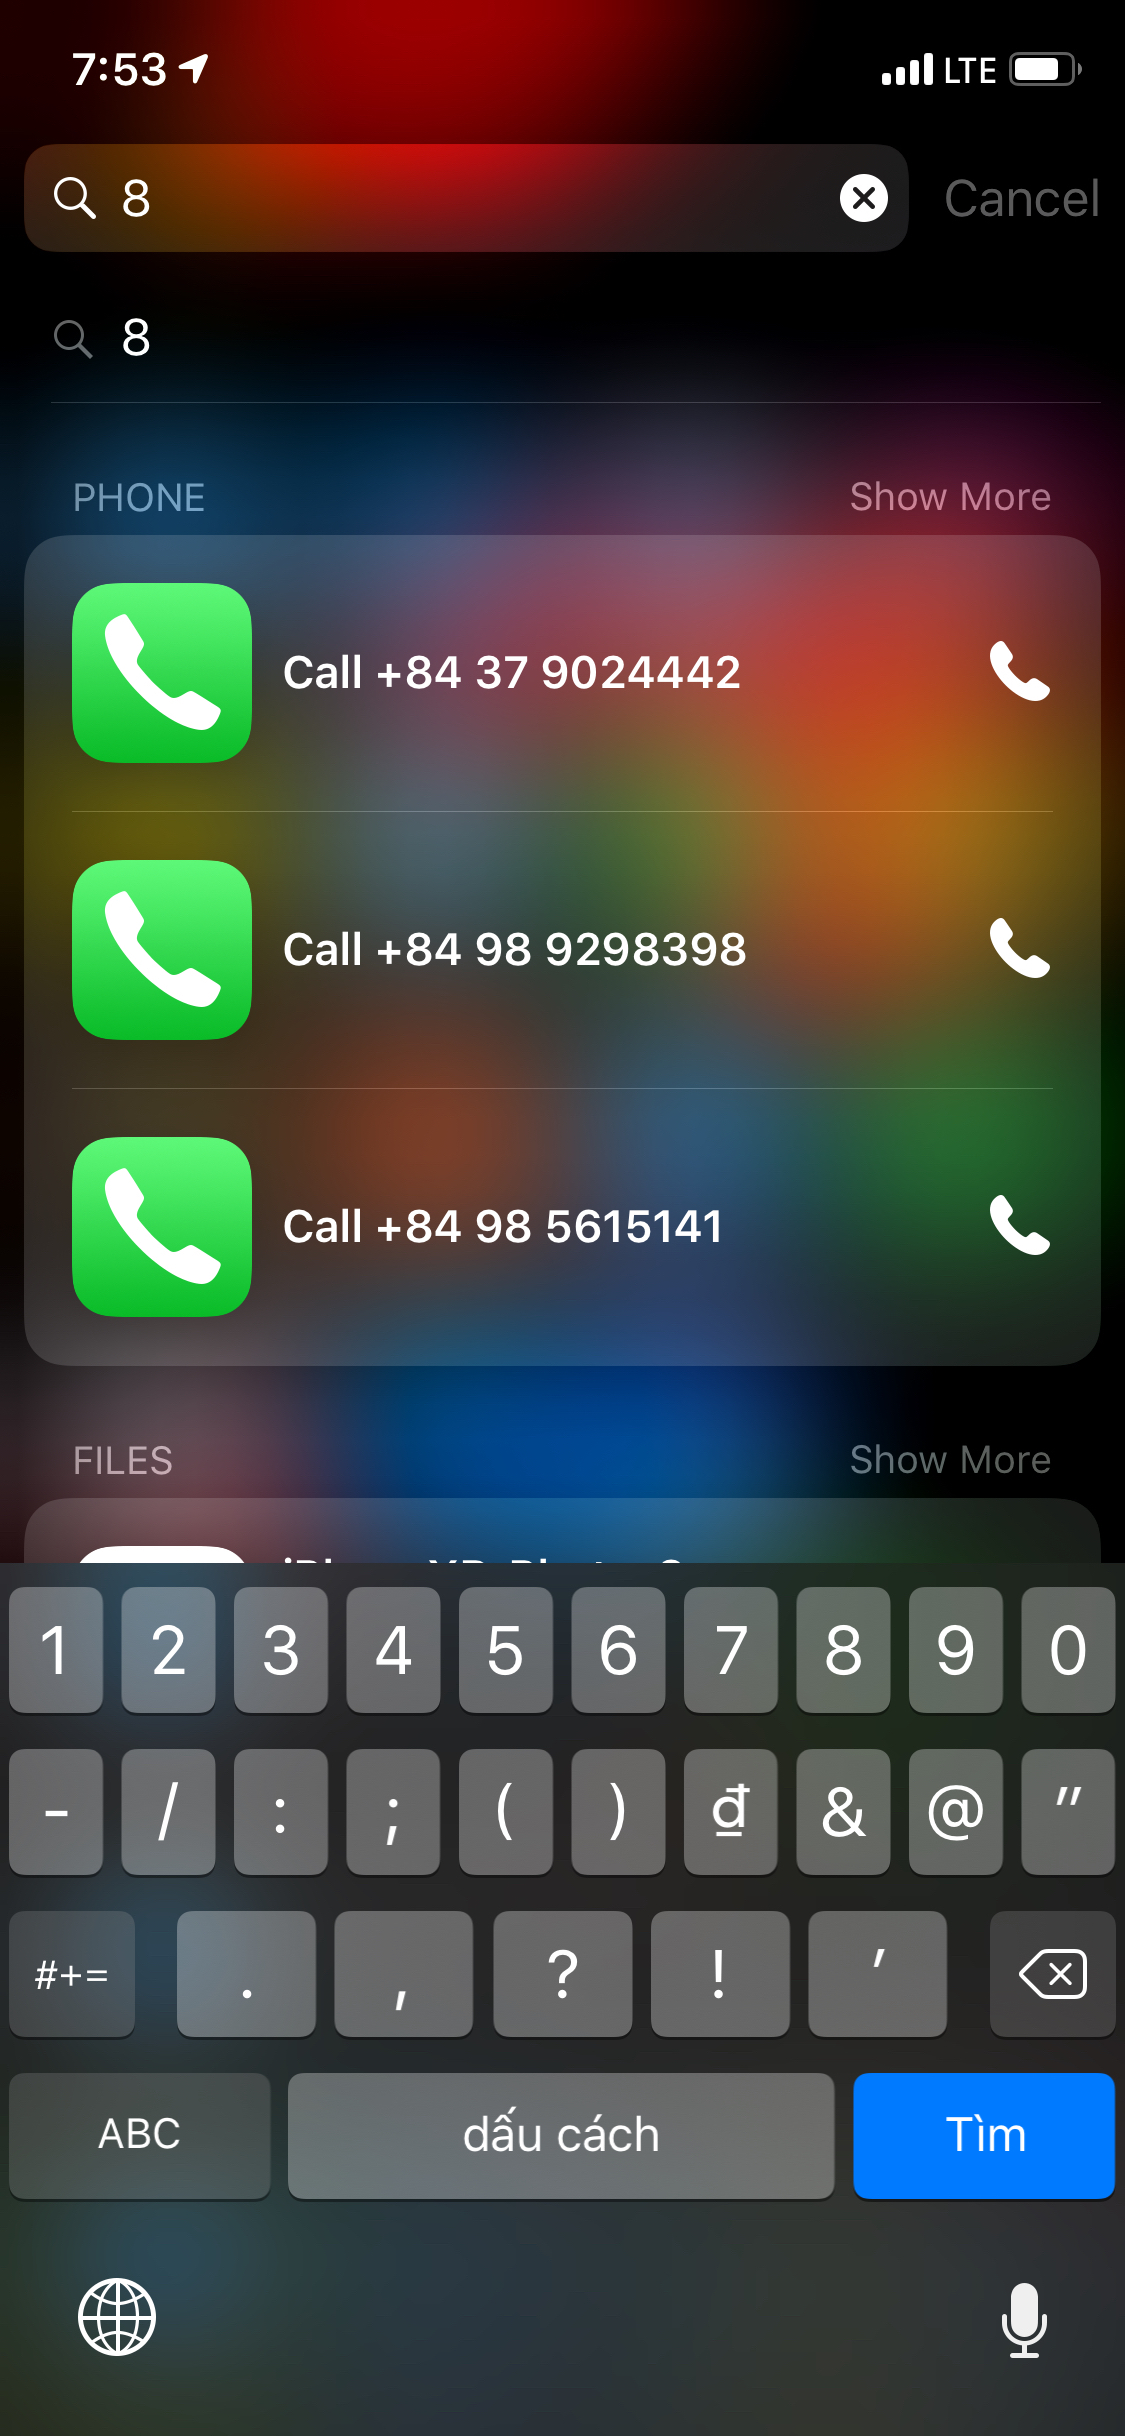 trên iPhone  mình toàn tìm tên hay số đt từ màn hình home để gọi chứ không vào trong ứng dụng điện